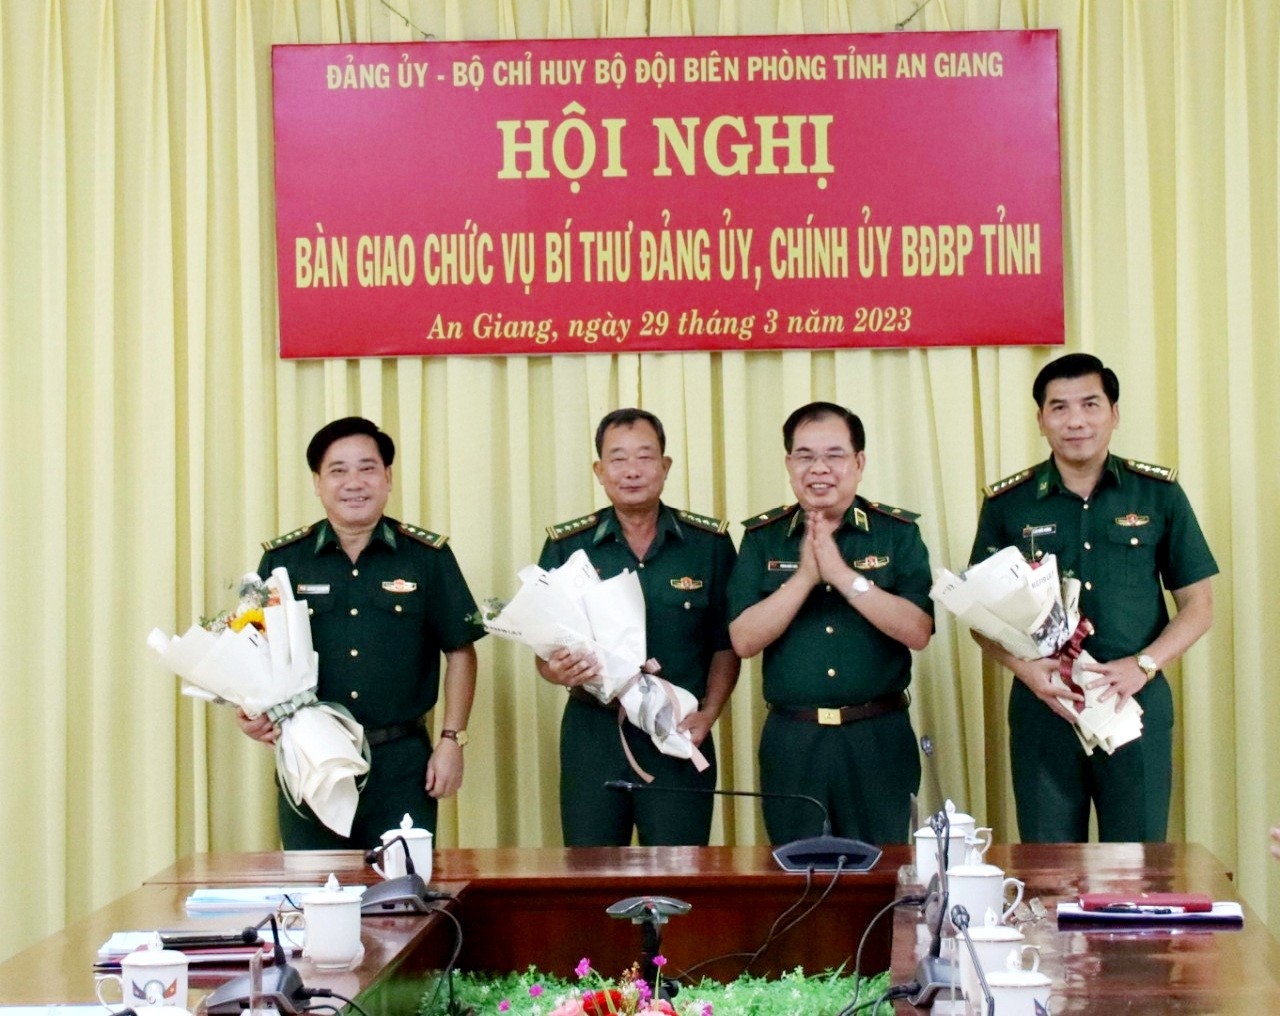  Thượng tá Nguyễn Văn Hiệp nhận nhiệm vụ Chính ủy BĐBP tỉnh An Giang - Ảnh 1.